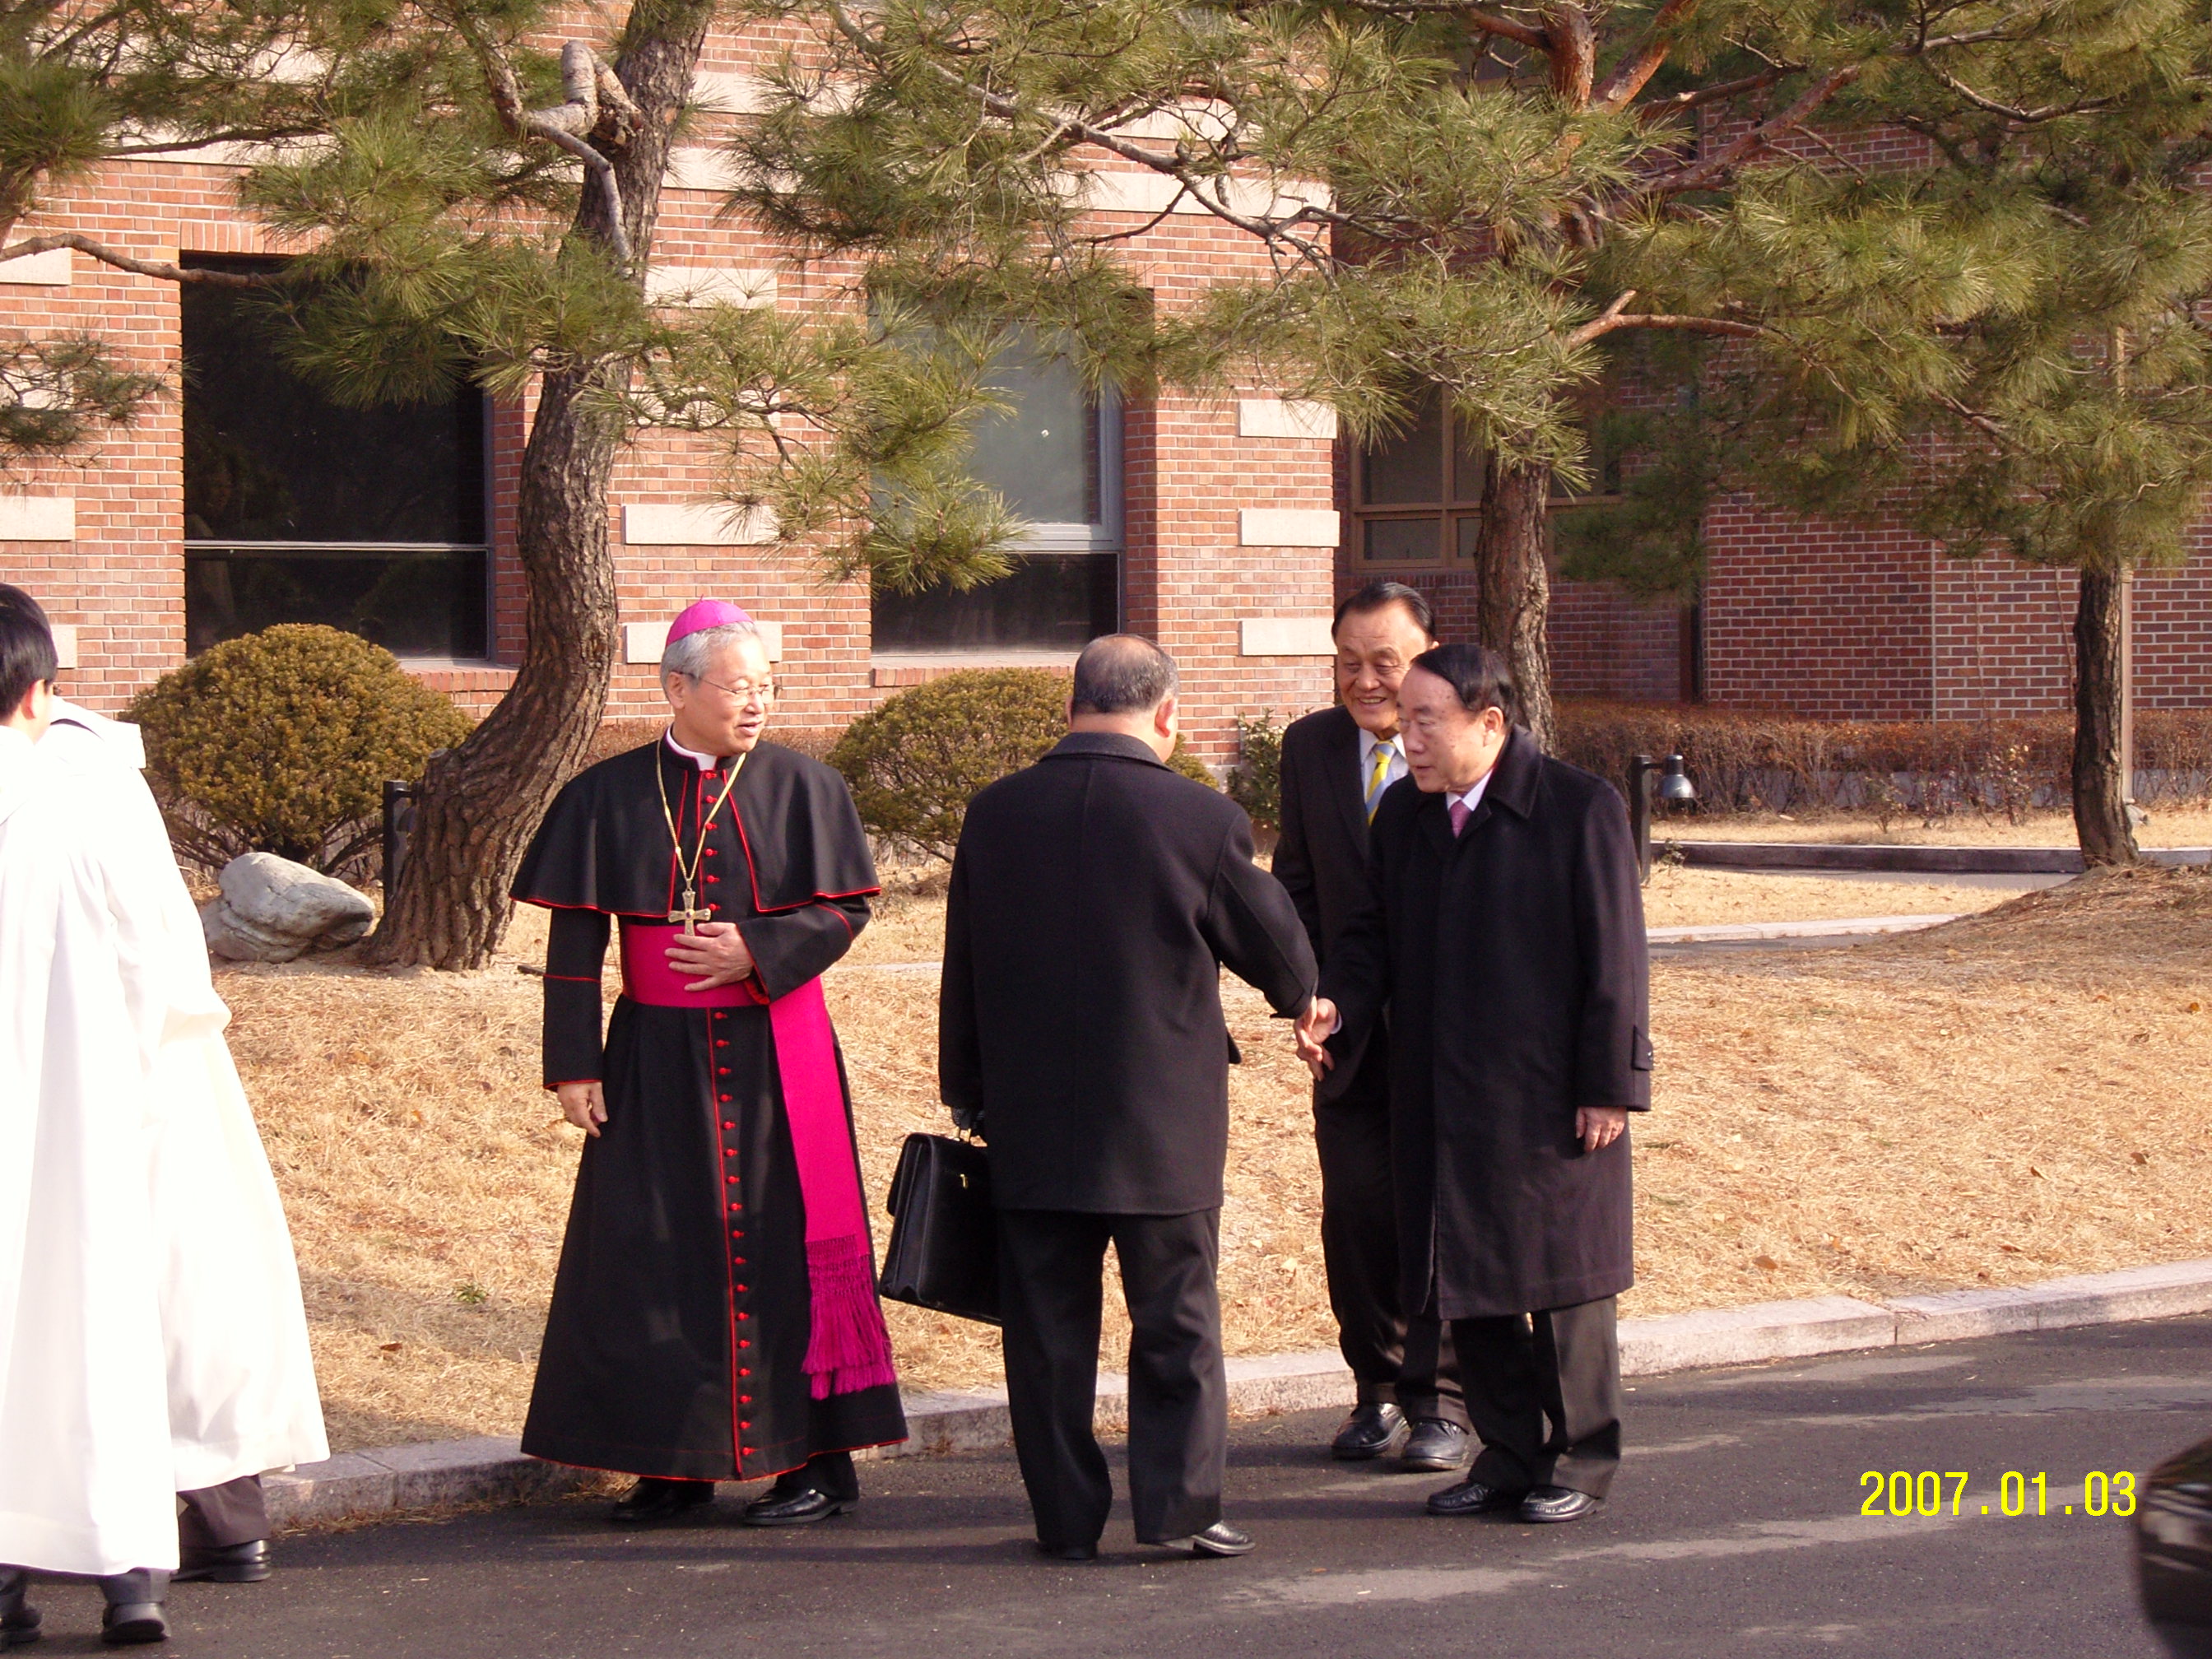 교구신년하례식(2007.1.3)의 관련된 이미지 입니다.